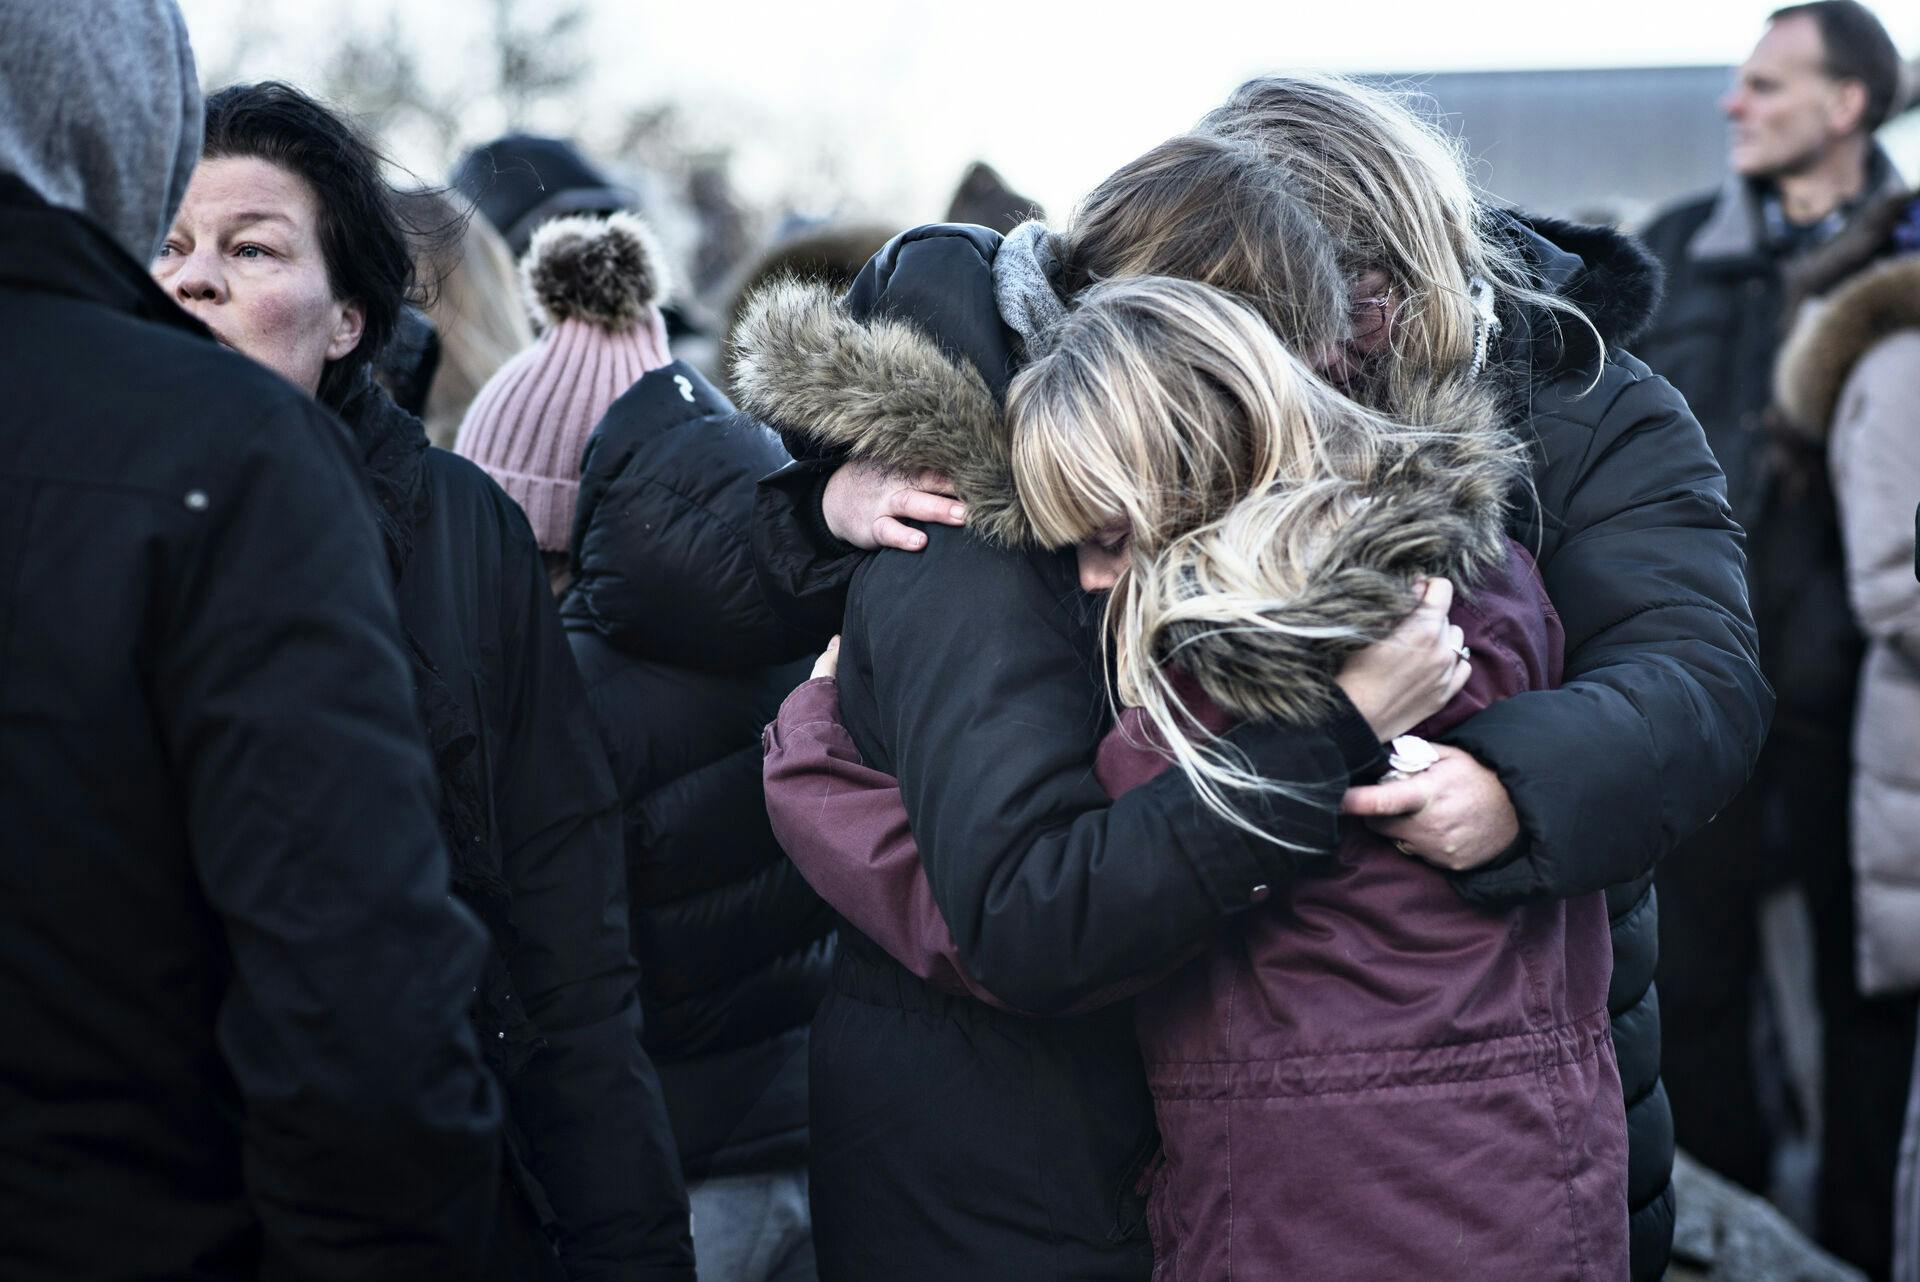 Efter liget af Emilie Meng blev fundet, blev der holdt mindehøjtidelighed i Korsør den 26. december 2016.
